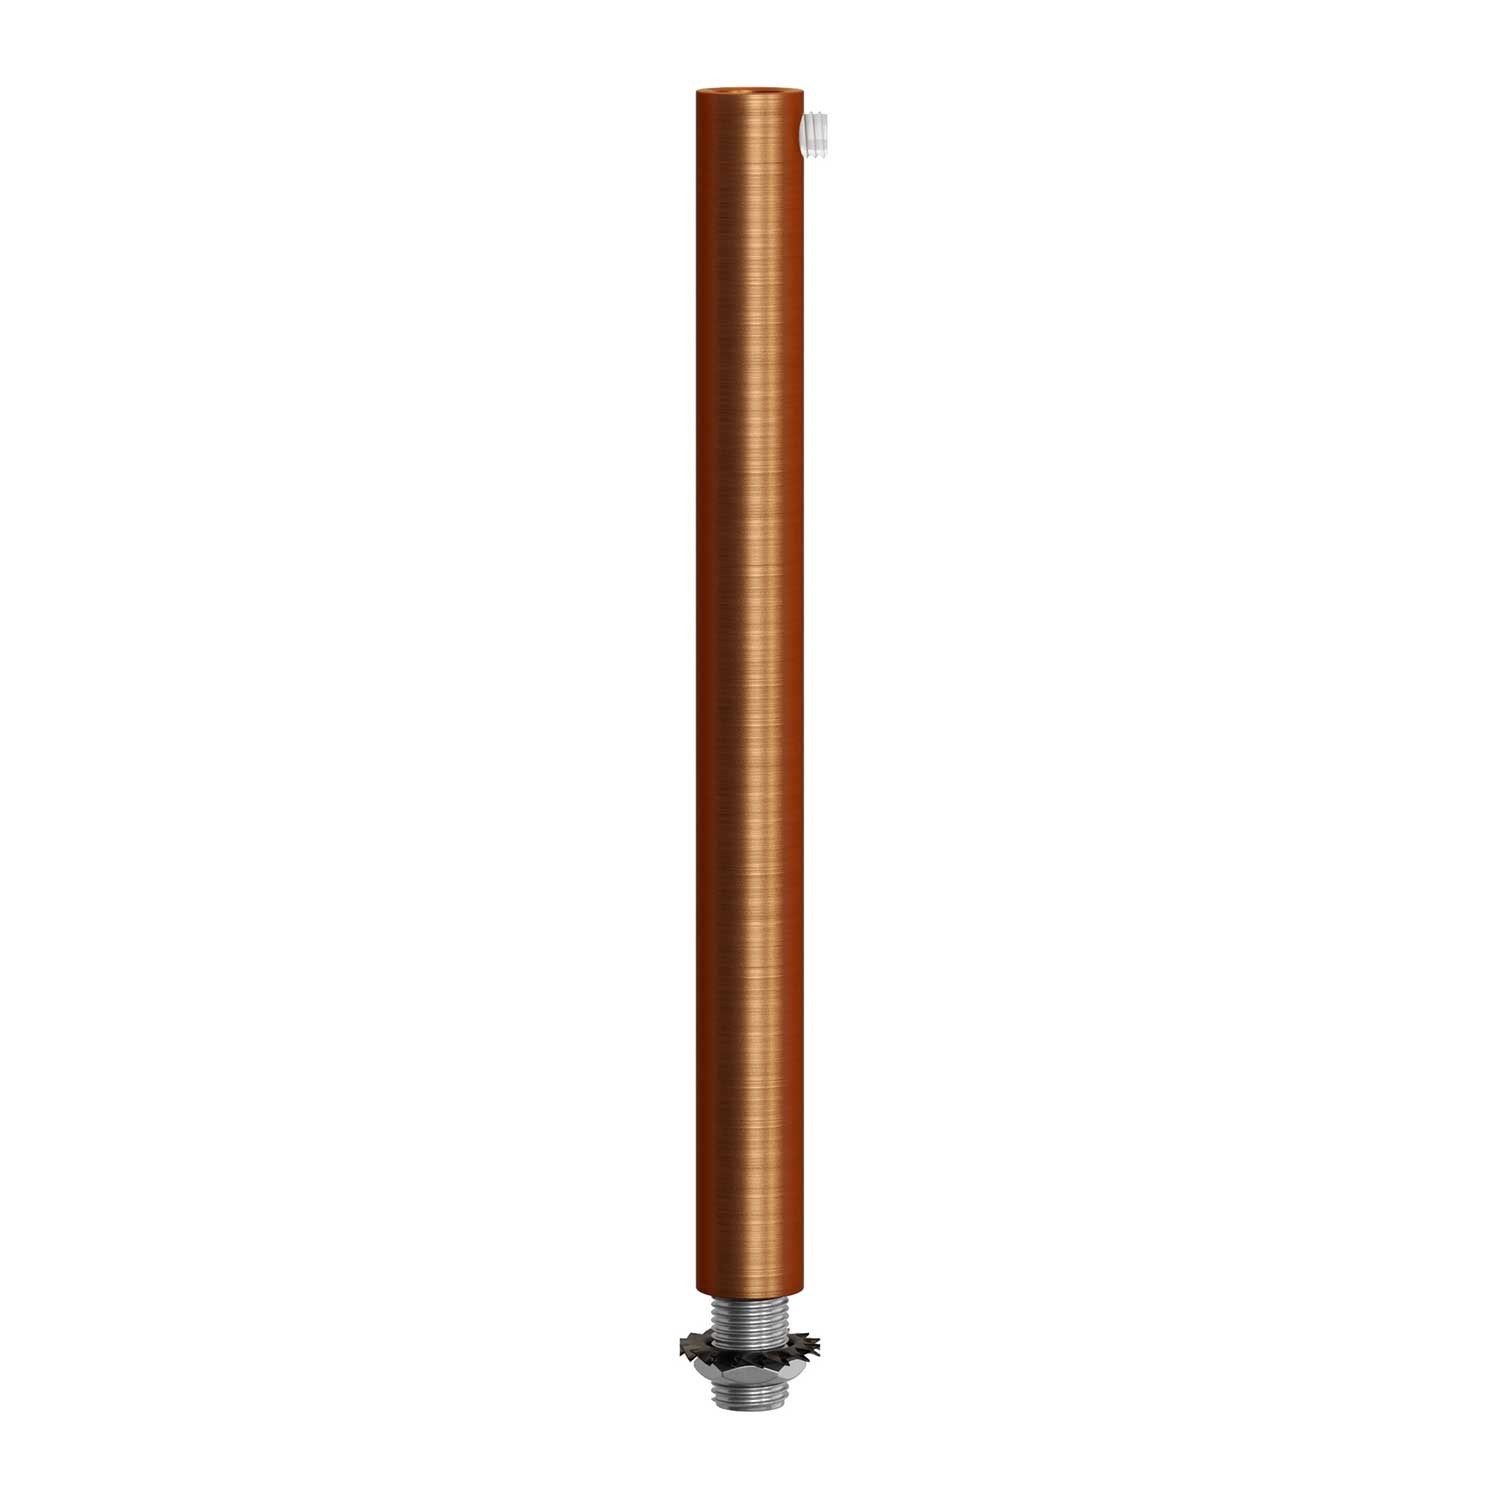 Cylindrisk kabelklemme af metal, længde 15 cm, komplet med stang, møtrik og skive